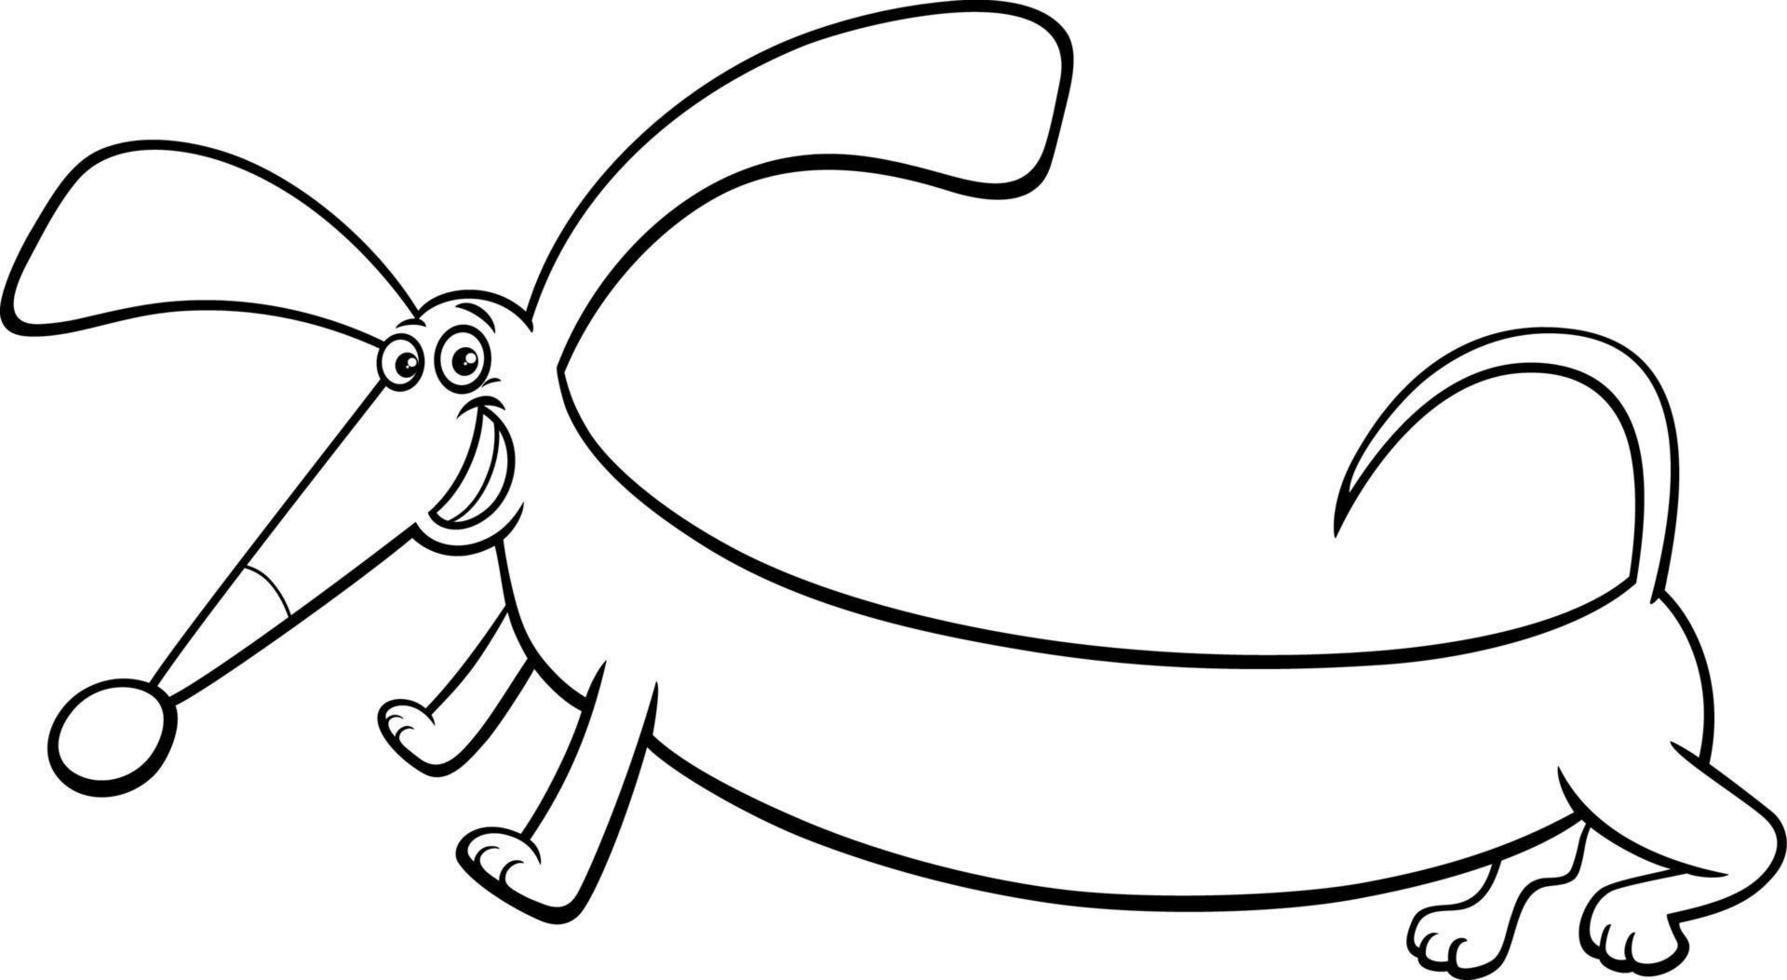 desenho de cachorro dachshund de raça pura de desenho engraçado para colorir vetor